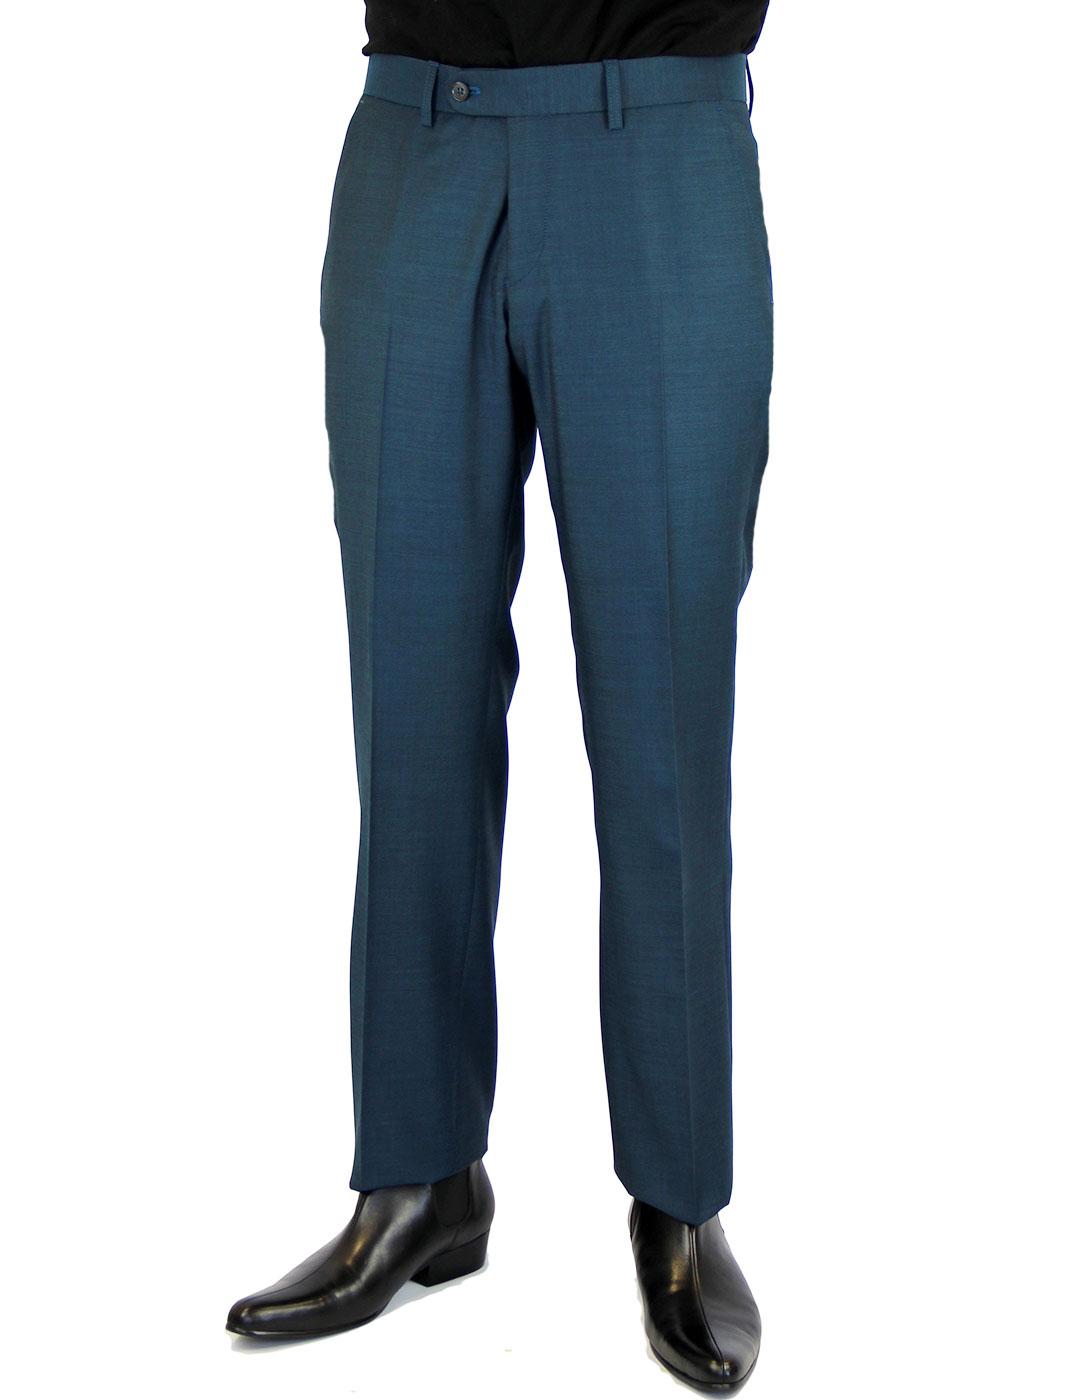 Retro 60s Mod Slim Plain Front Suit Trousers TEAL